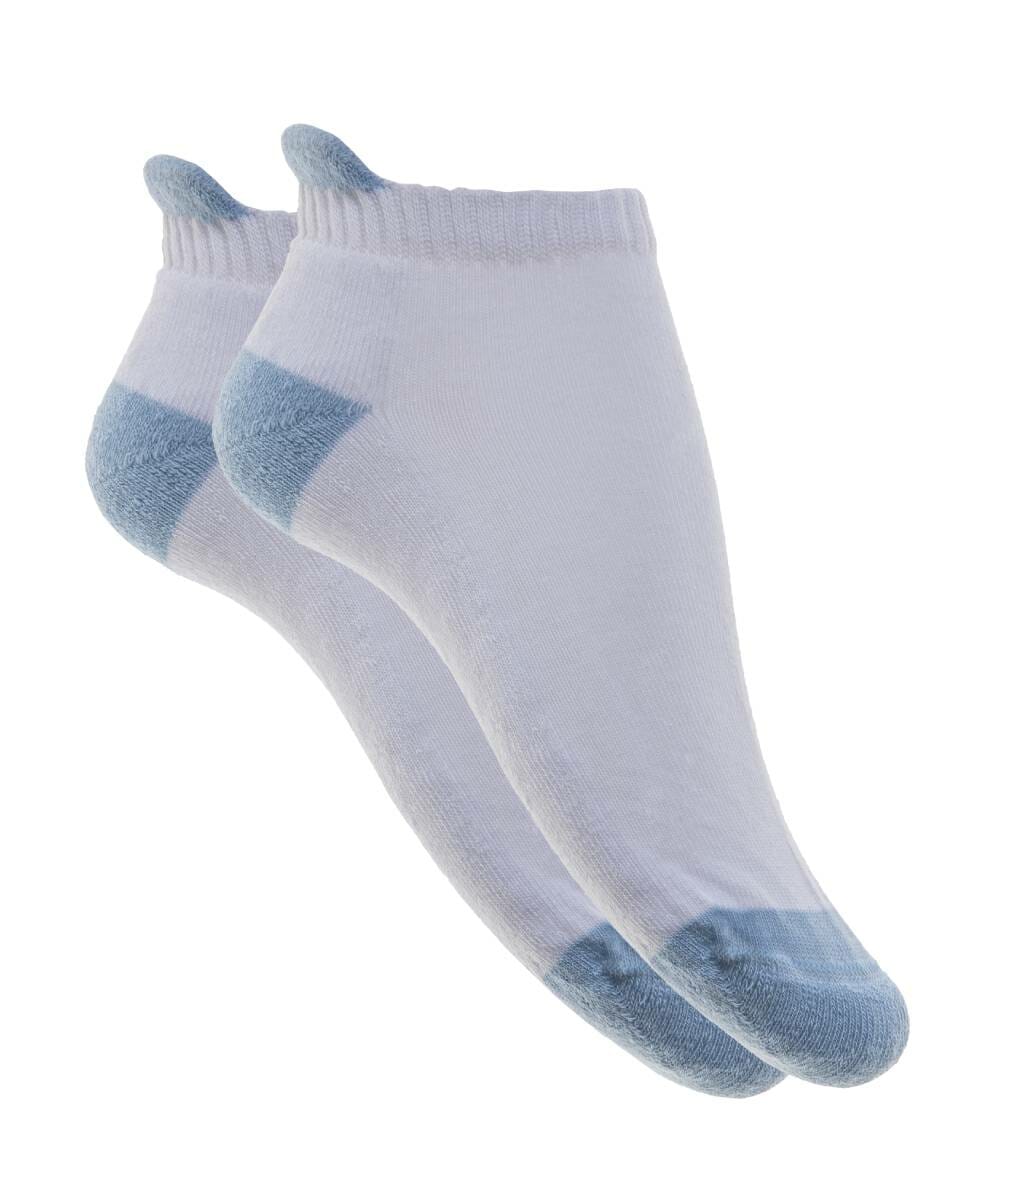 Γυναικεία κοφτή κάλτσα πετσετέ λευκή-σιέλ - Per Mia Donna - 